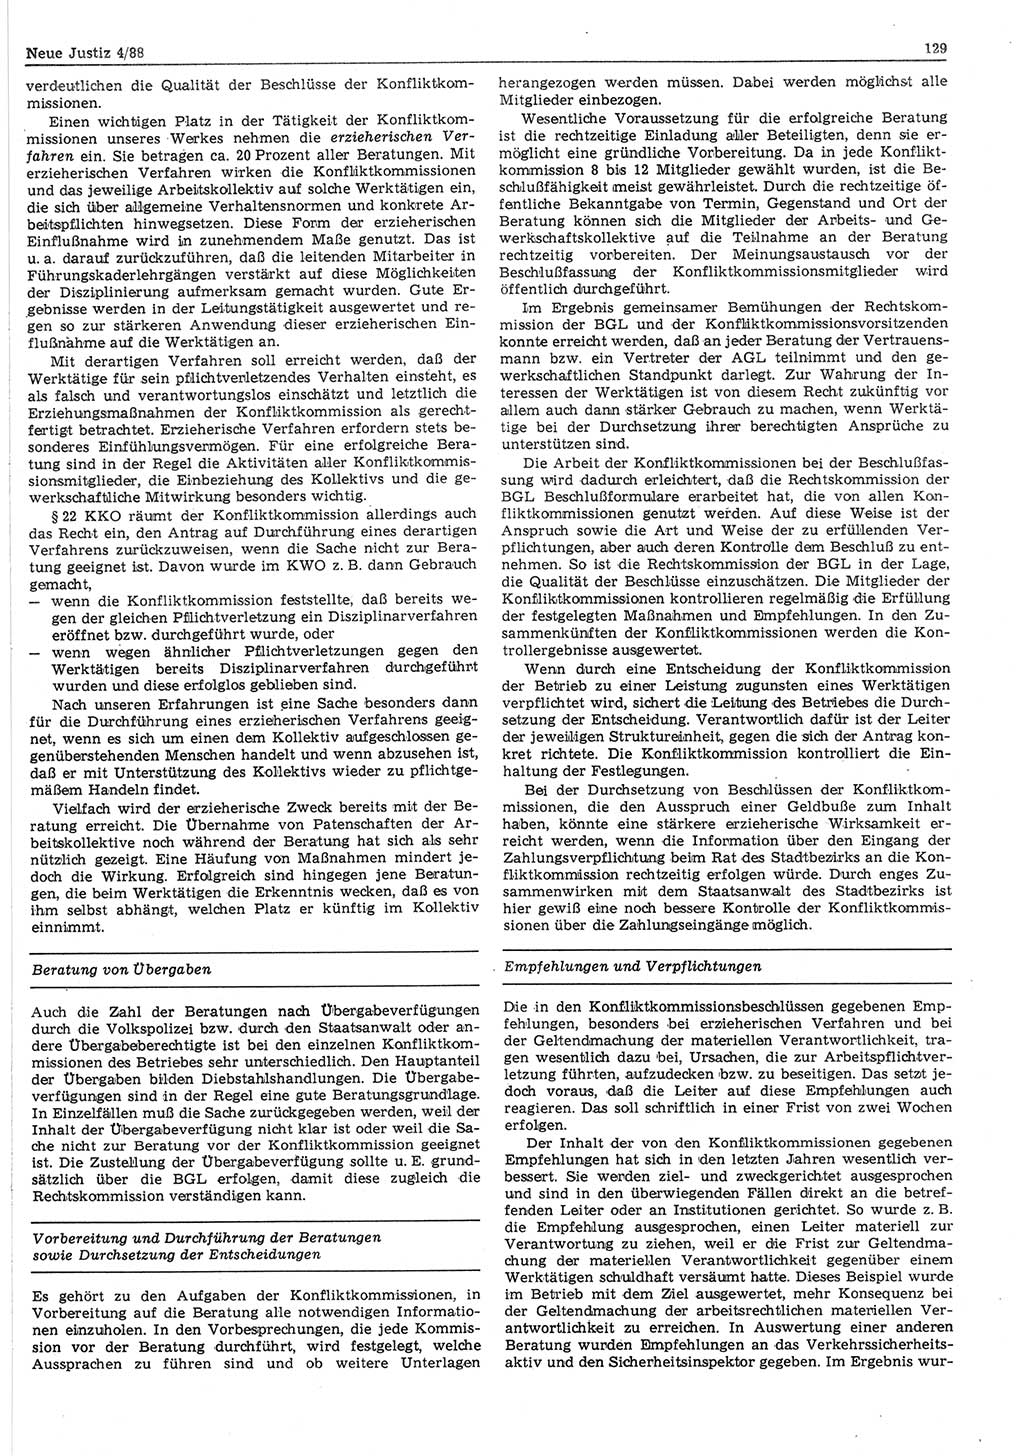 Neue Justiz (NJ), Zeitschrift für sozialistisches Recht und Gesetzlichkeit [Deutsche Demokratische Republik (DDR)], 42. Jahrgang 1988, Seite 129 (NJ DDR 1988, S. 129)